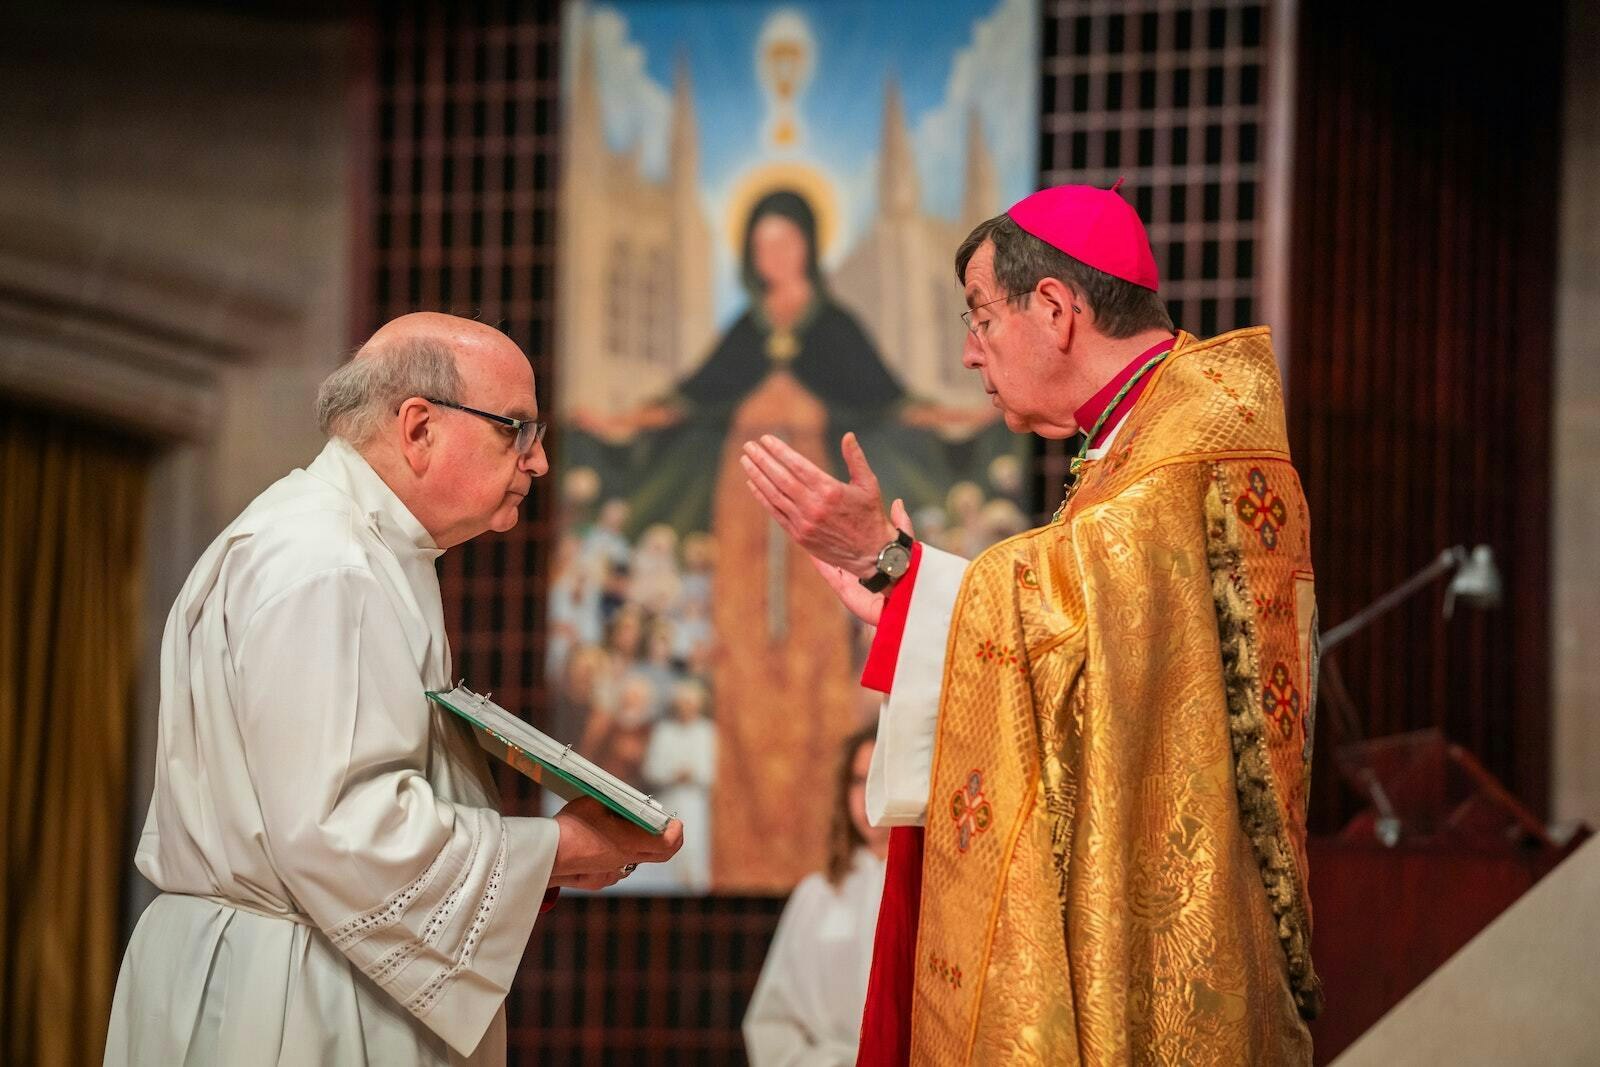 El Arzobispo Vigneron lee una oración para bendecir el espacio recién renovado, con un cuadro de la Virgen María en el fondo. El proyecto representa la renovación más importante de la catedral desde la década de 1990.